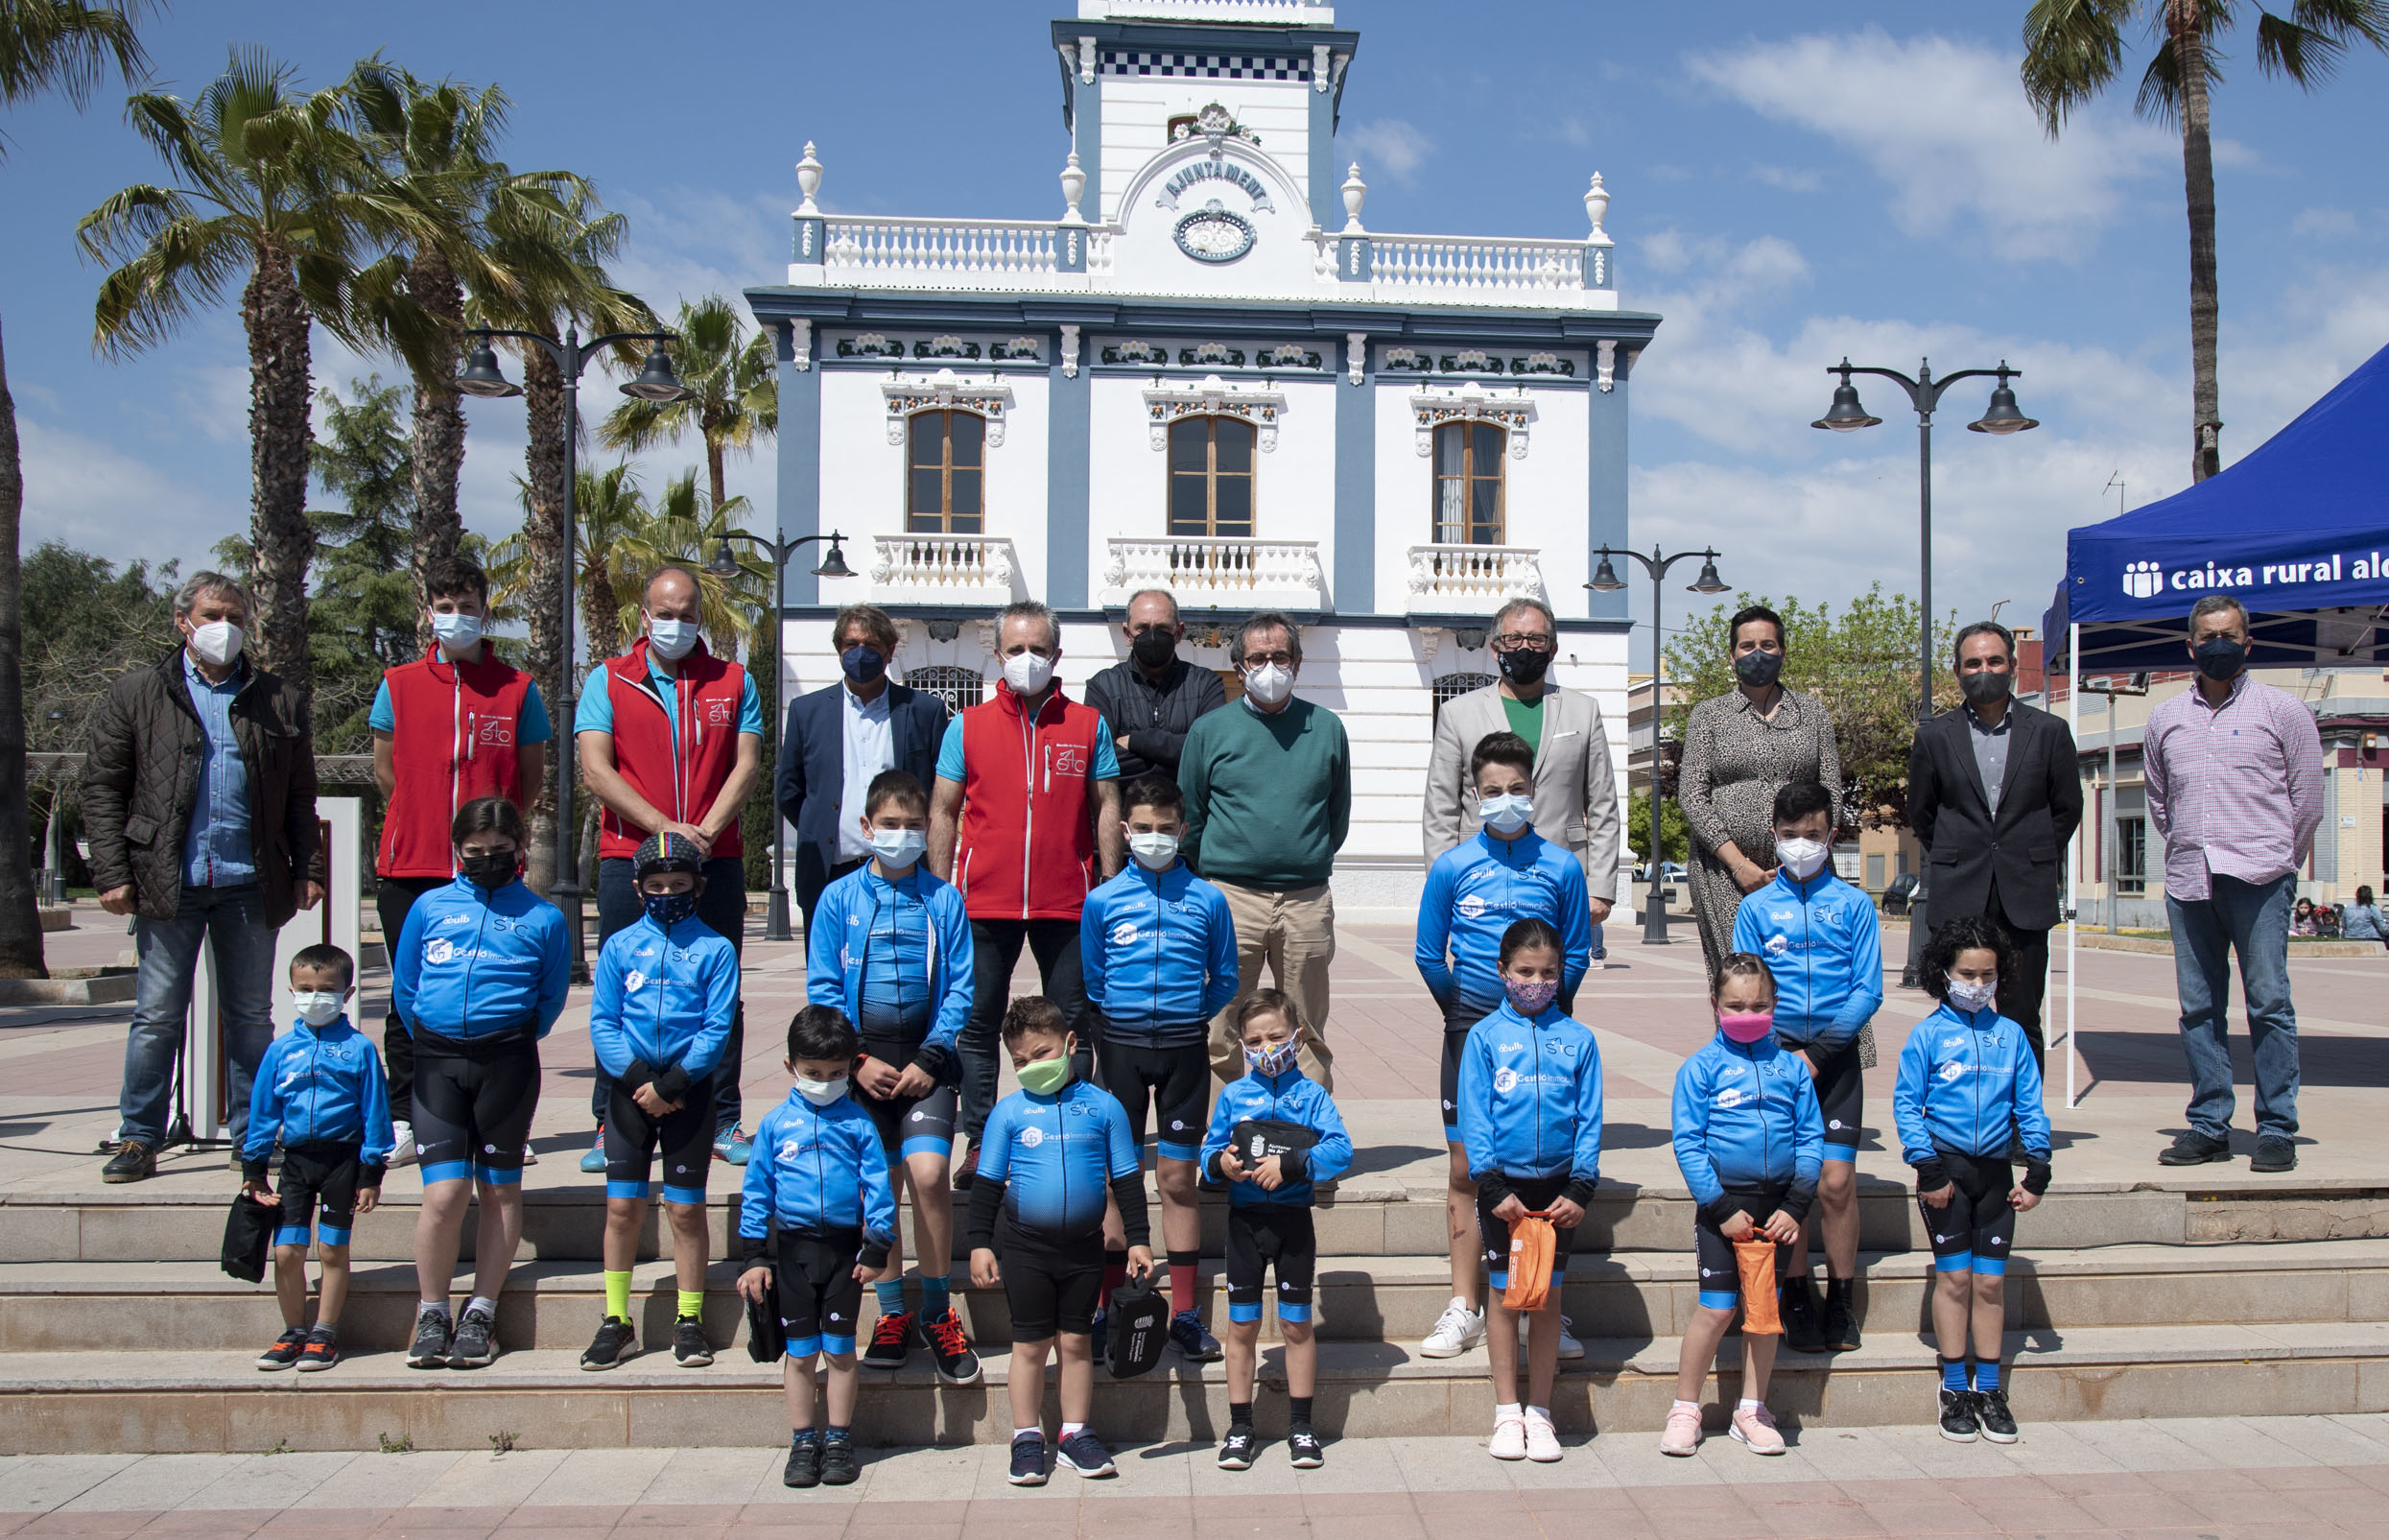 Les Alqueries presenta su nueva escuela de ciclismo de Sport Ciclista Alqueriense